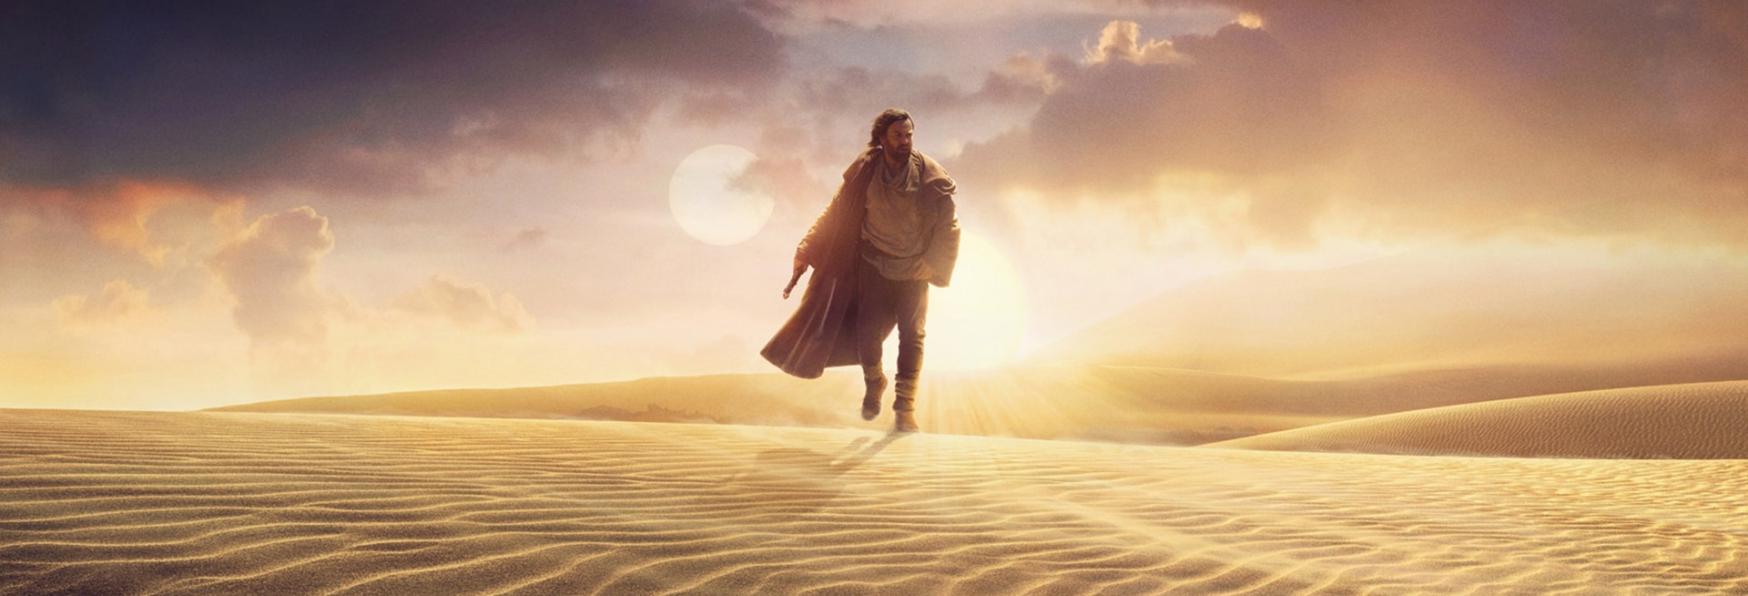 Obi-Wan Kenobi: nessun Trailer Rilasciato durante il Super Bowl, la Delusione dei Fan di Star Wars 